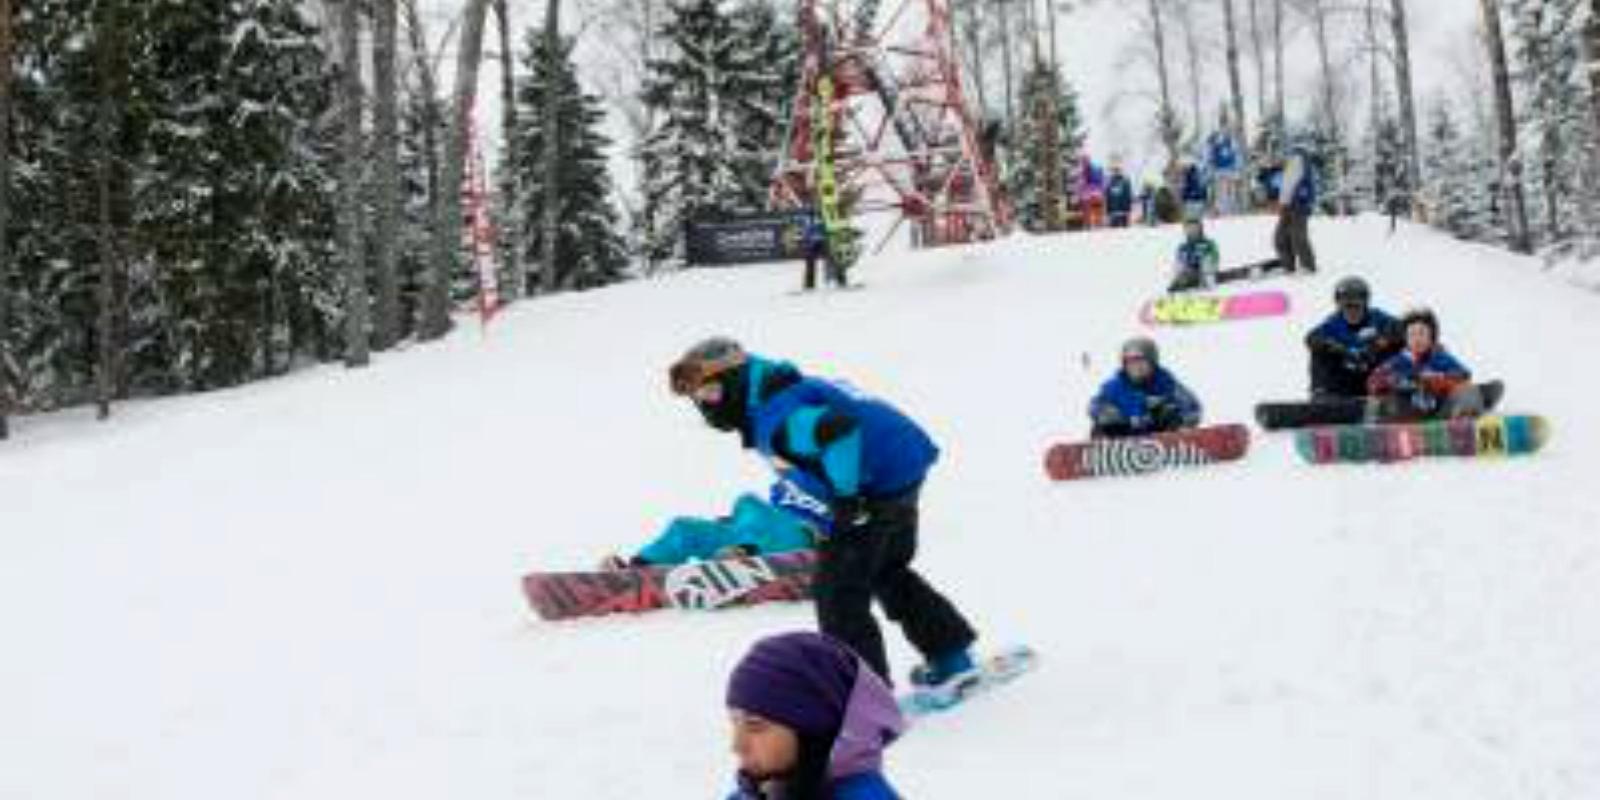 Snowboarding-Park und Hang für alpinen Skilauf auf dem Berg Valgebobusemägi